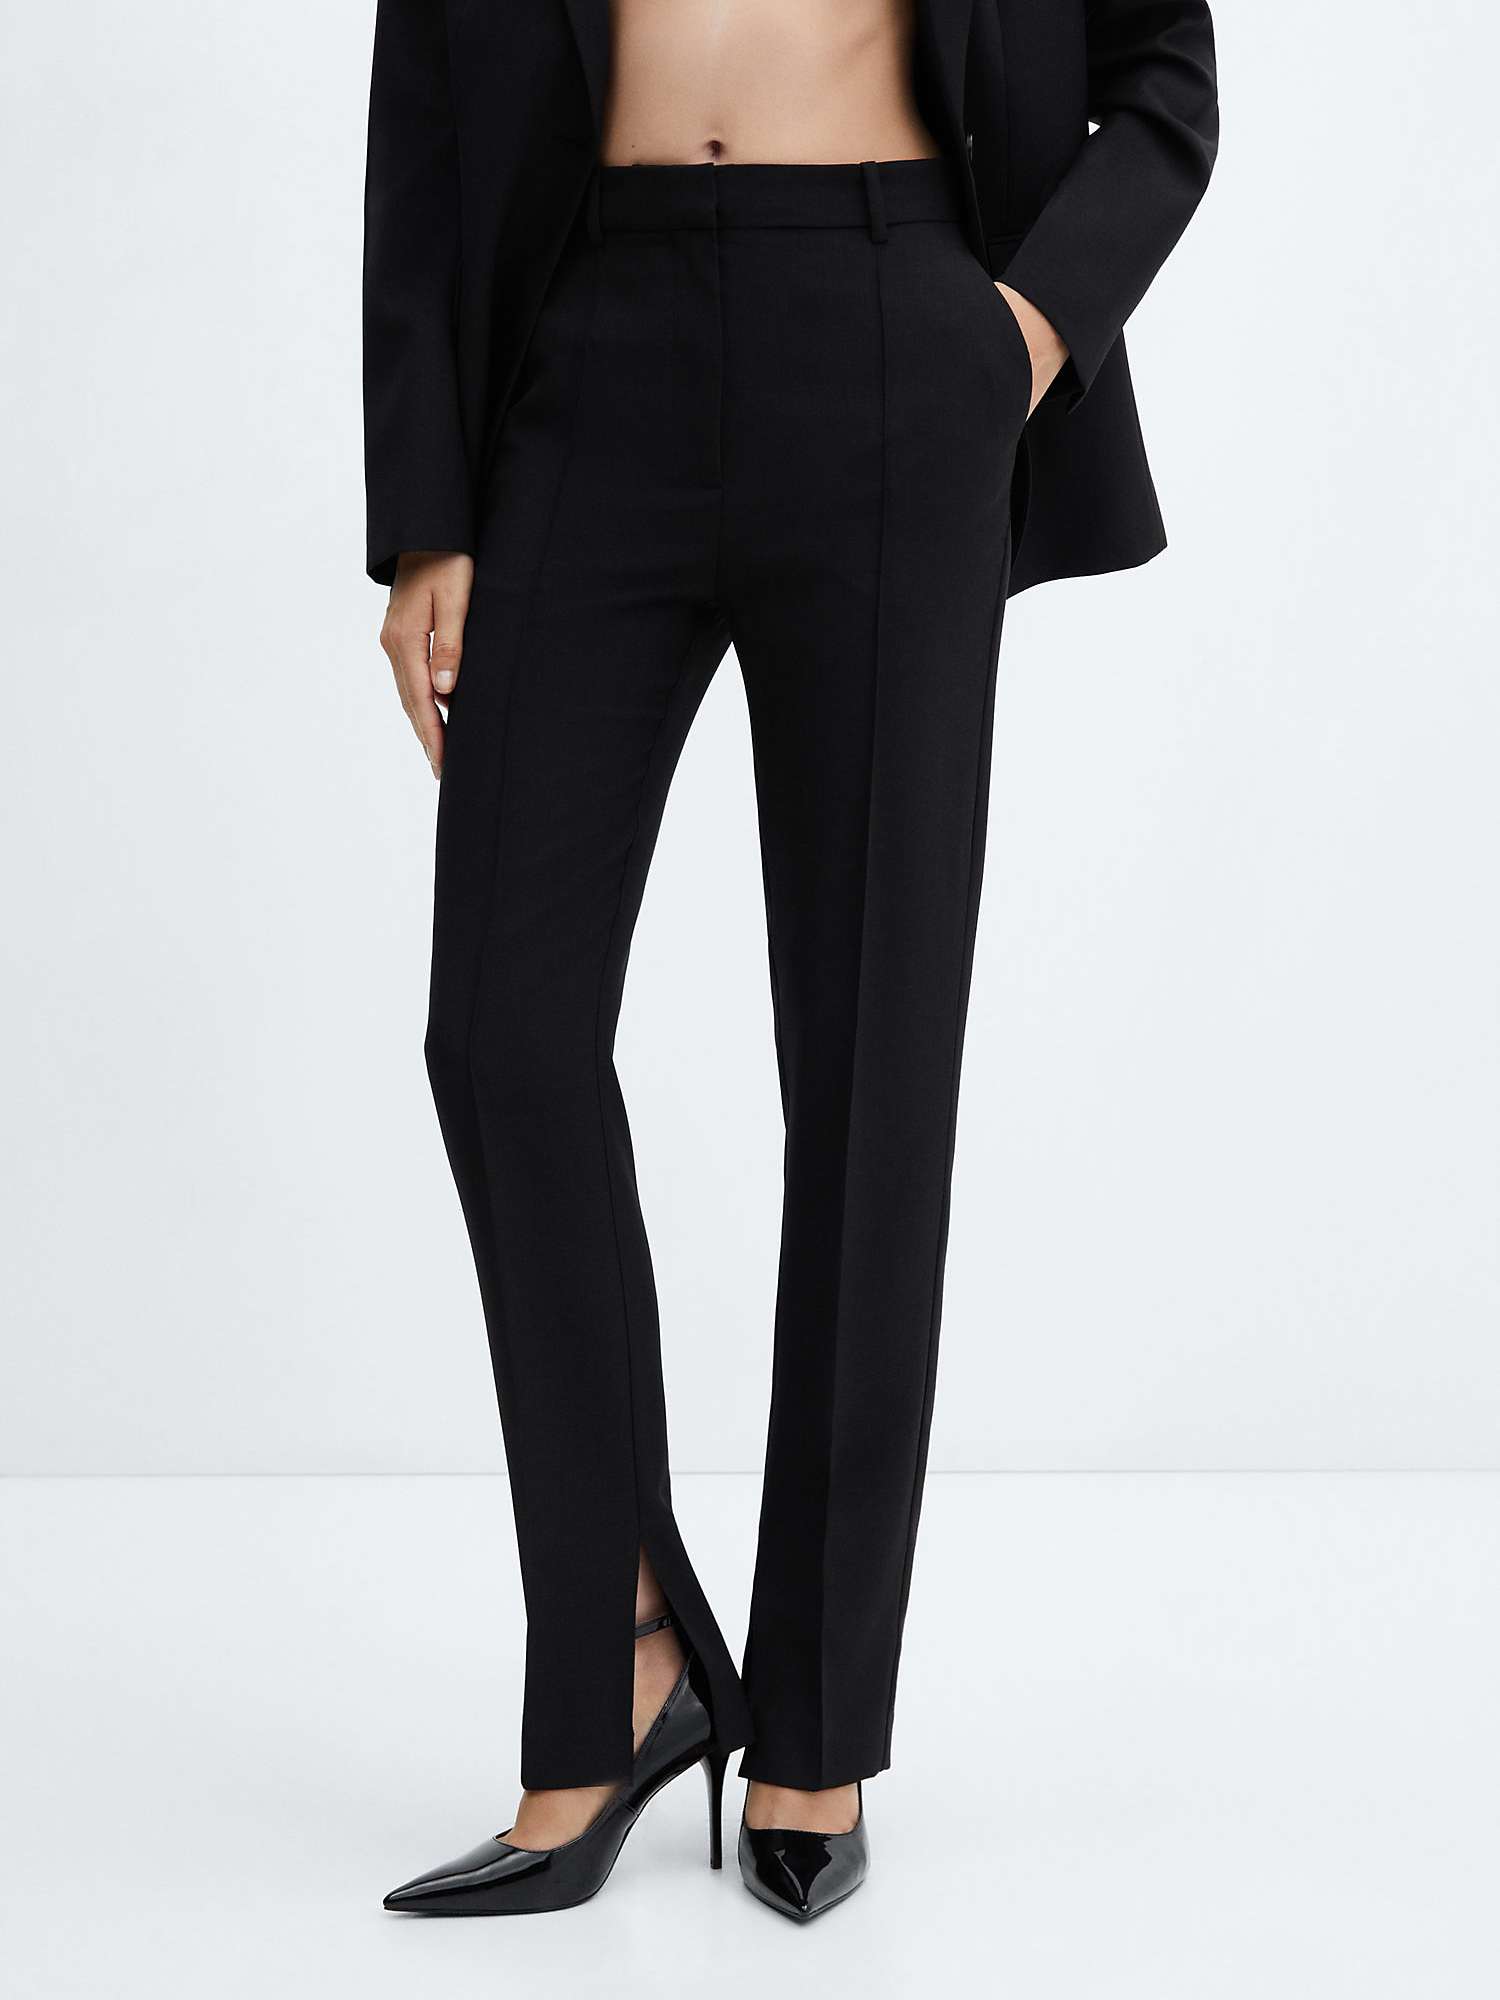 Mango Nantes Slit Hem Tailored Trousers, Black at John Lewis & Partners